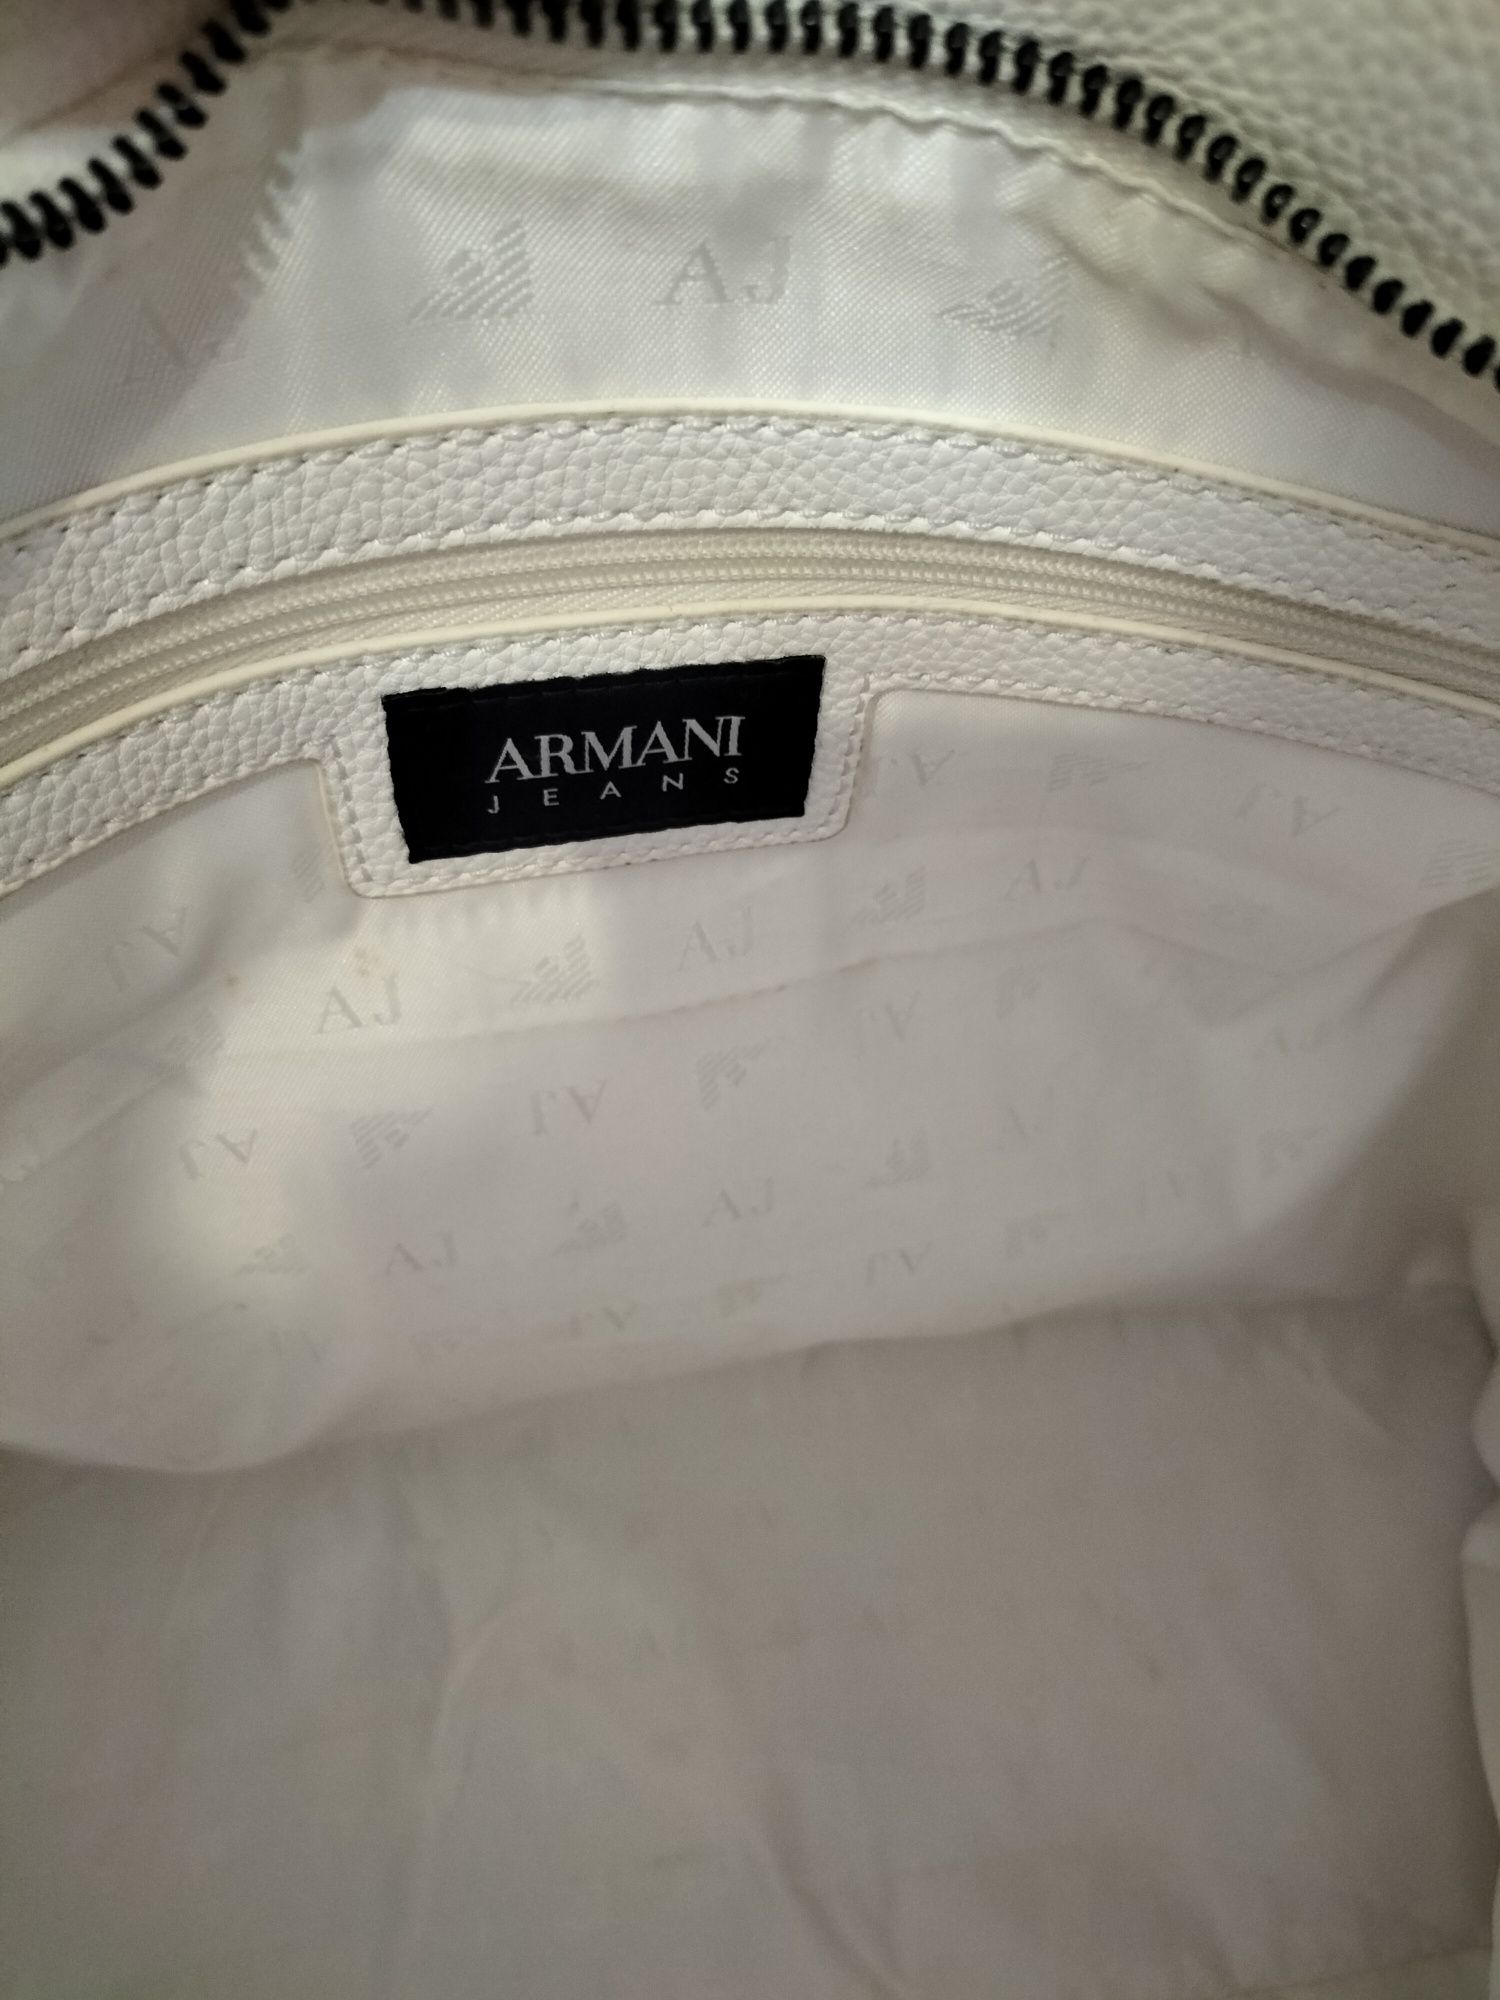 Geanta Armani Jeans Originala,alba,noua,mare,spatioasa,dama,cu stelute